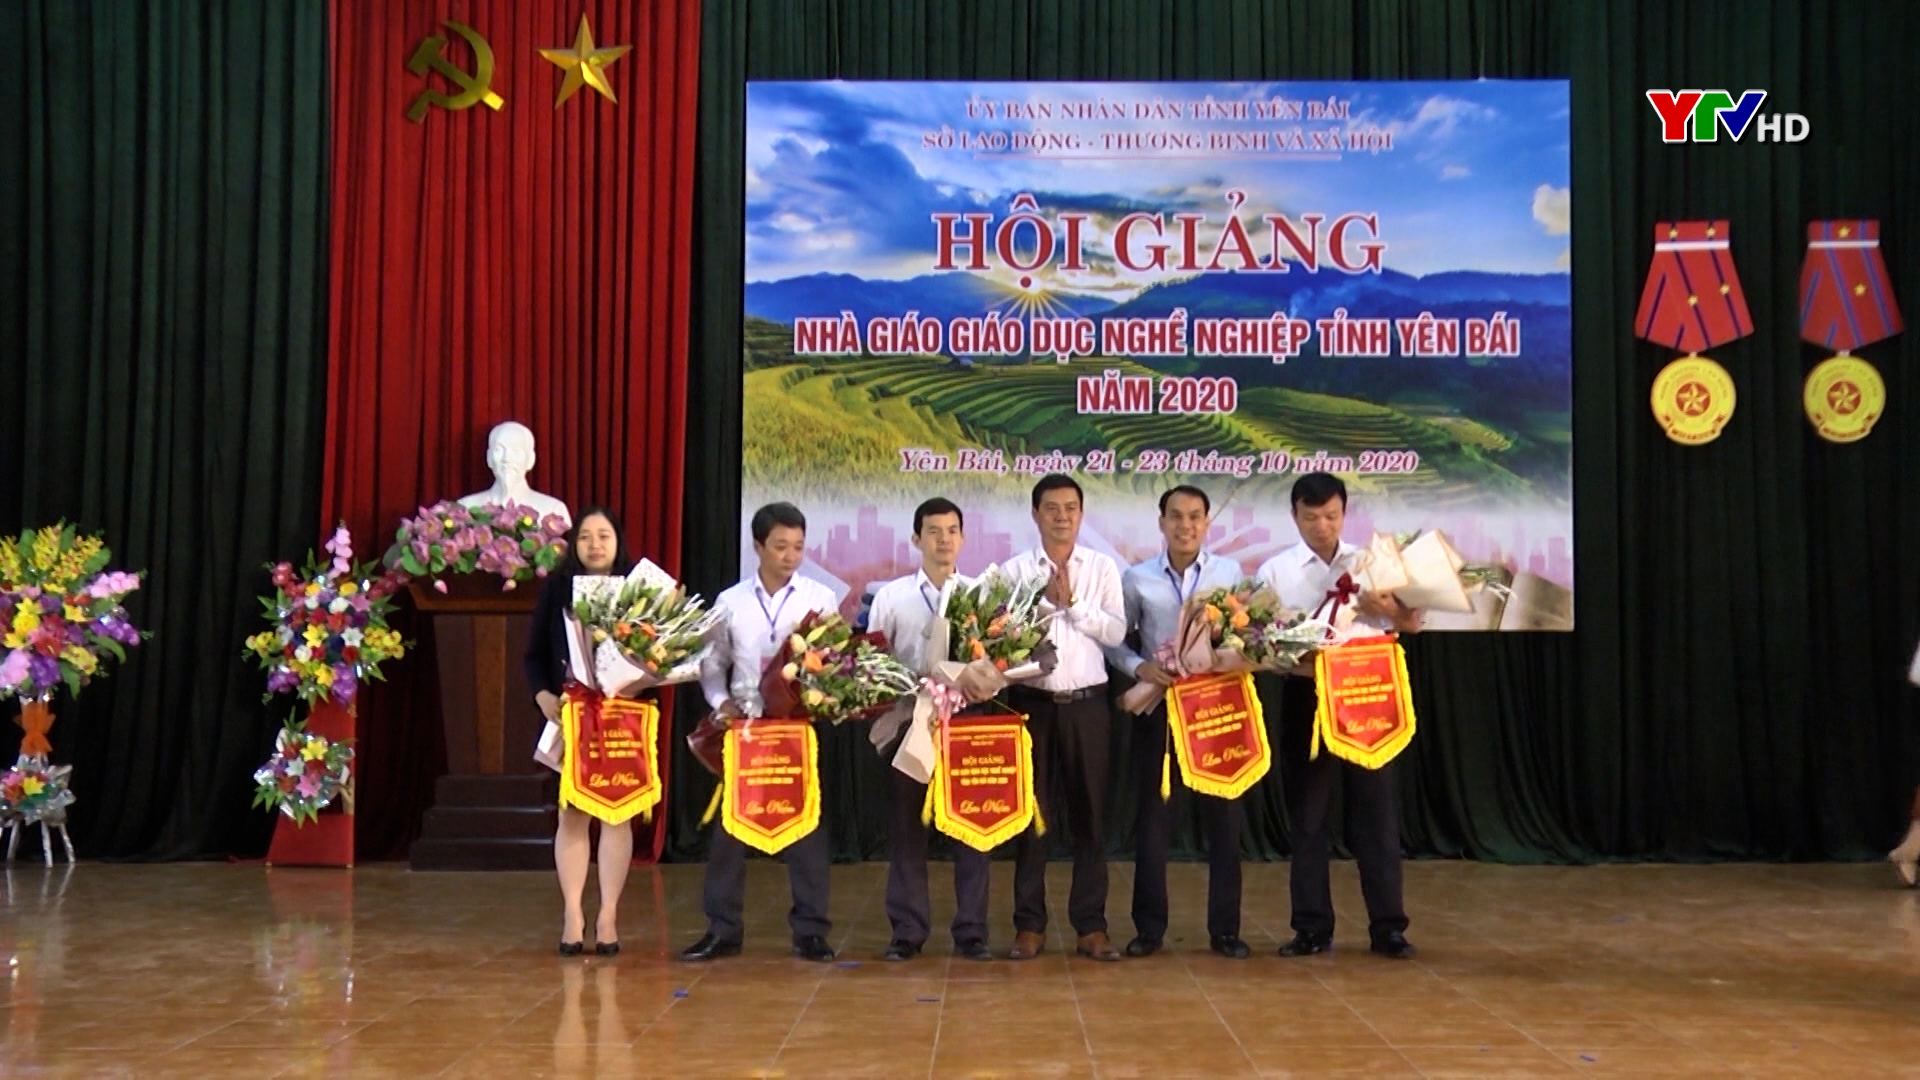 Hội giảng nhà giáo giáo dục nghề nghiệp tỉnh Yên Bái năm 2020